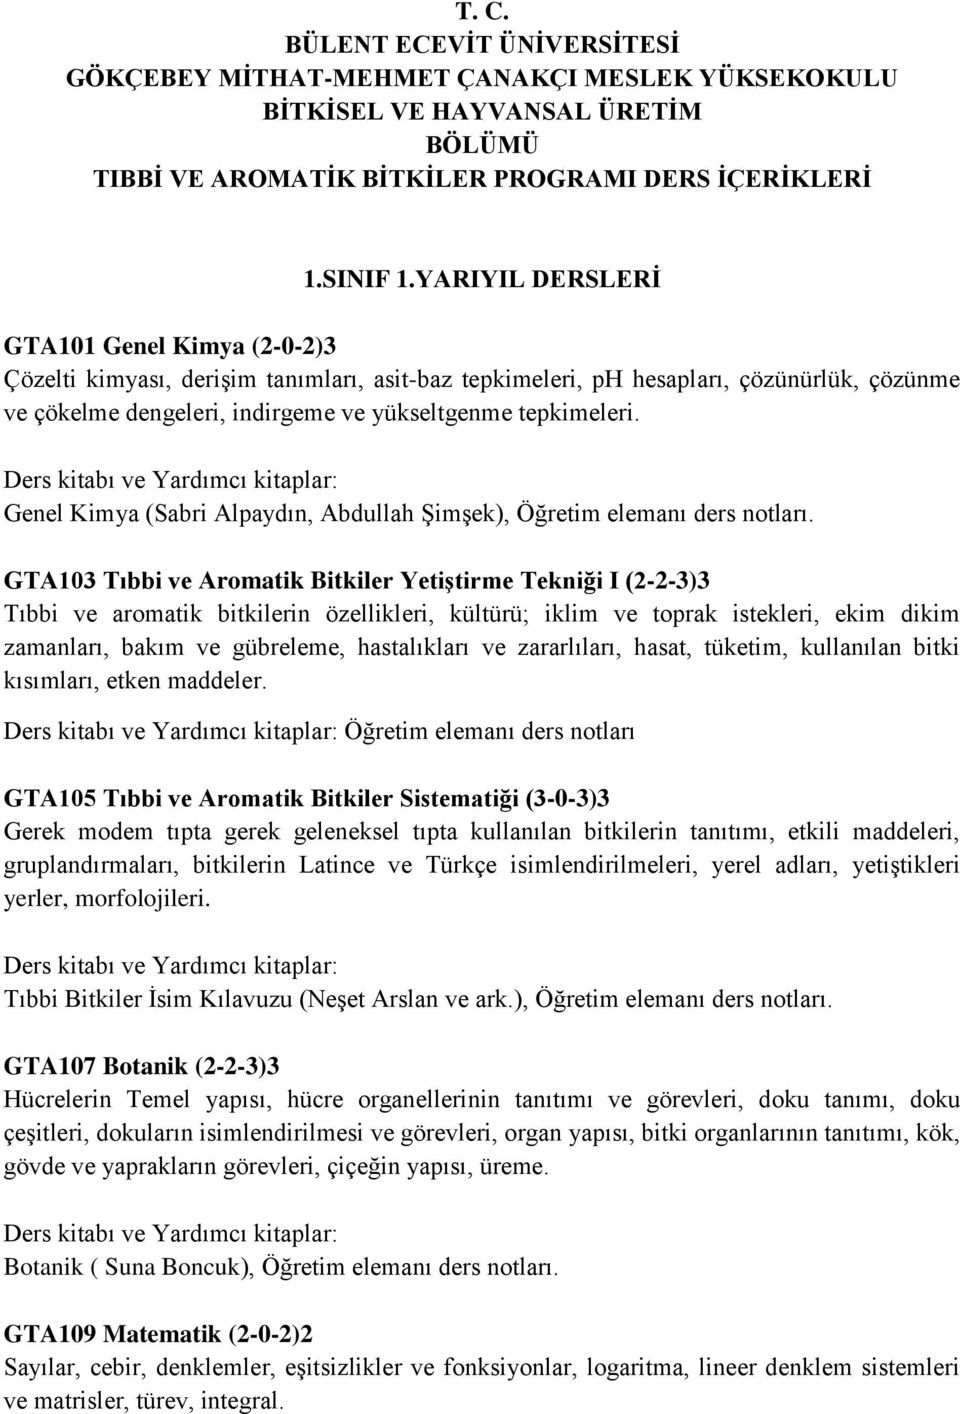 Genel Kimya (Sabri Alpaydın, Abdullah Şimşek), Öğretim elemanı ders notları.